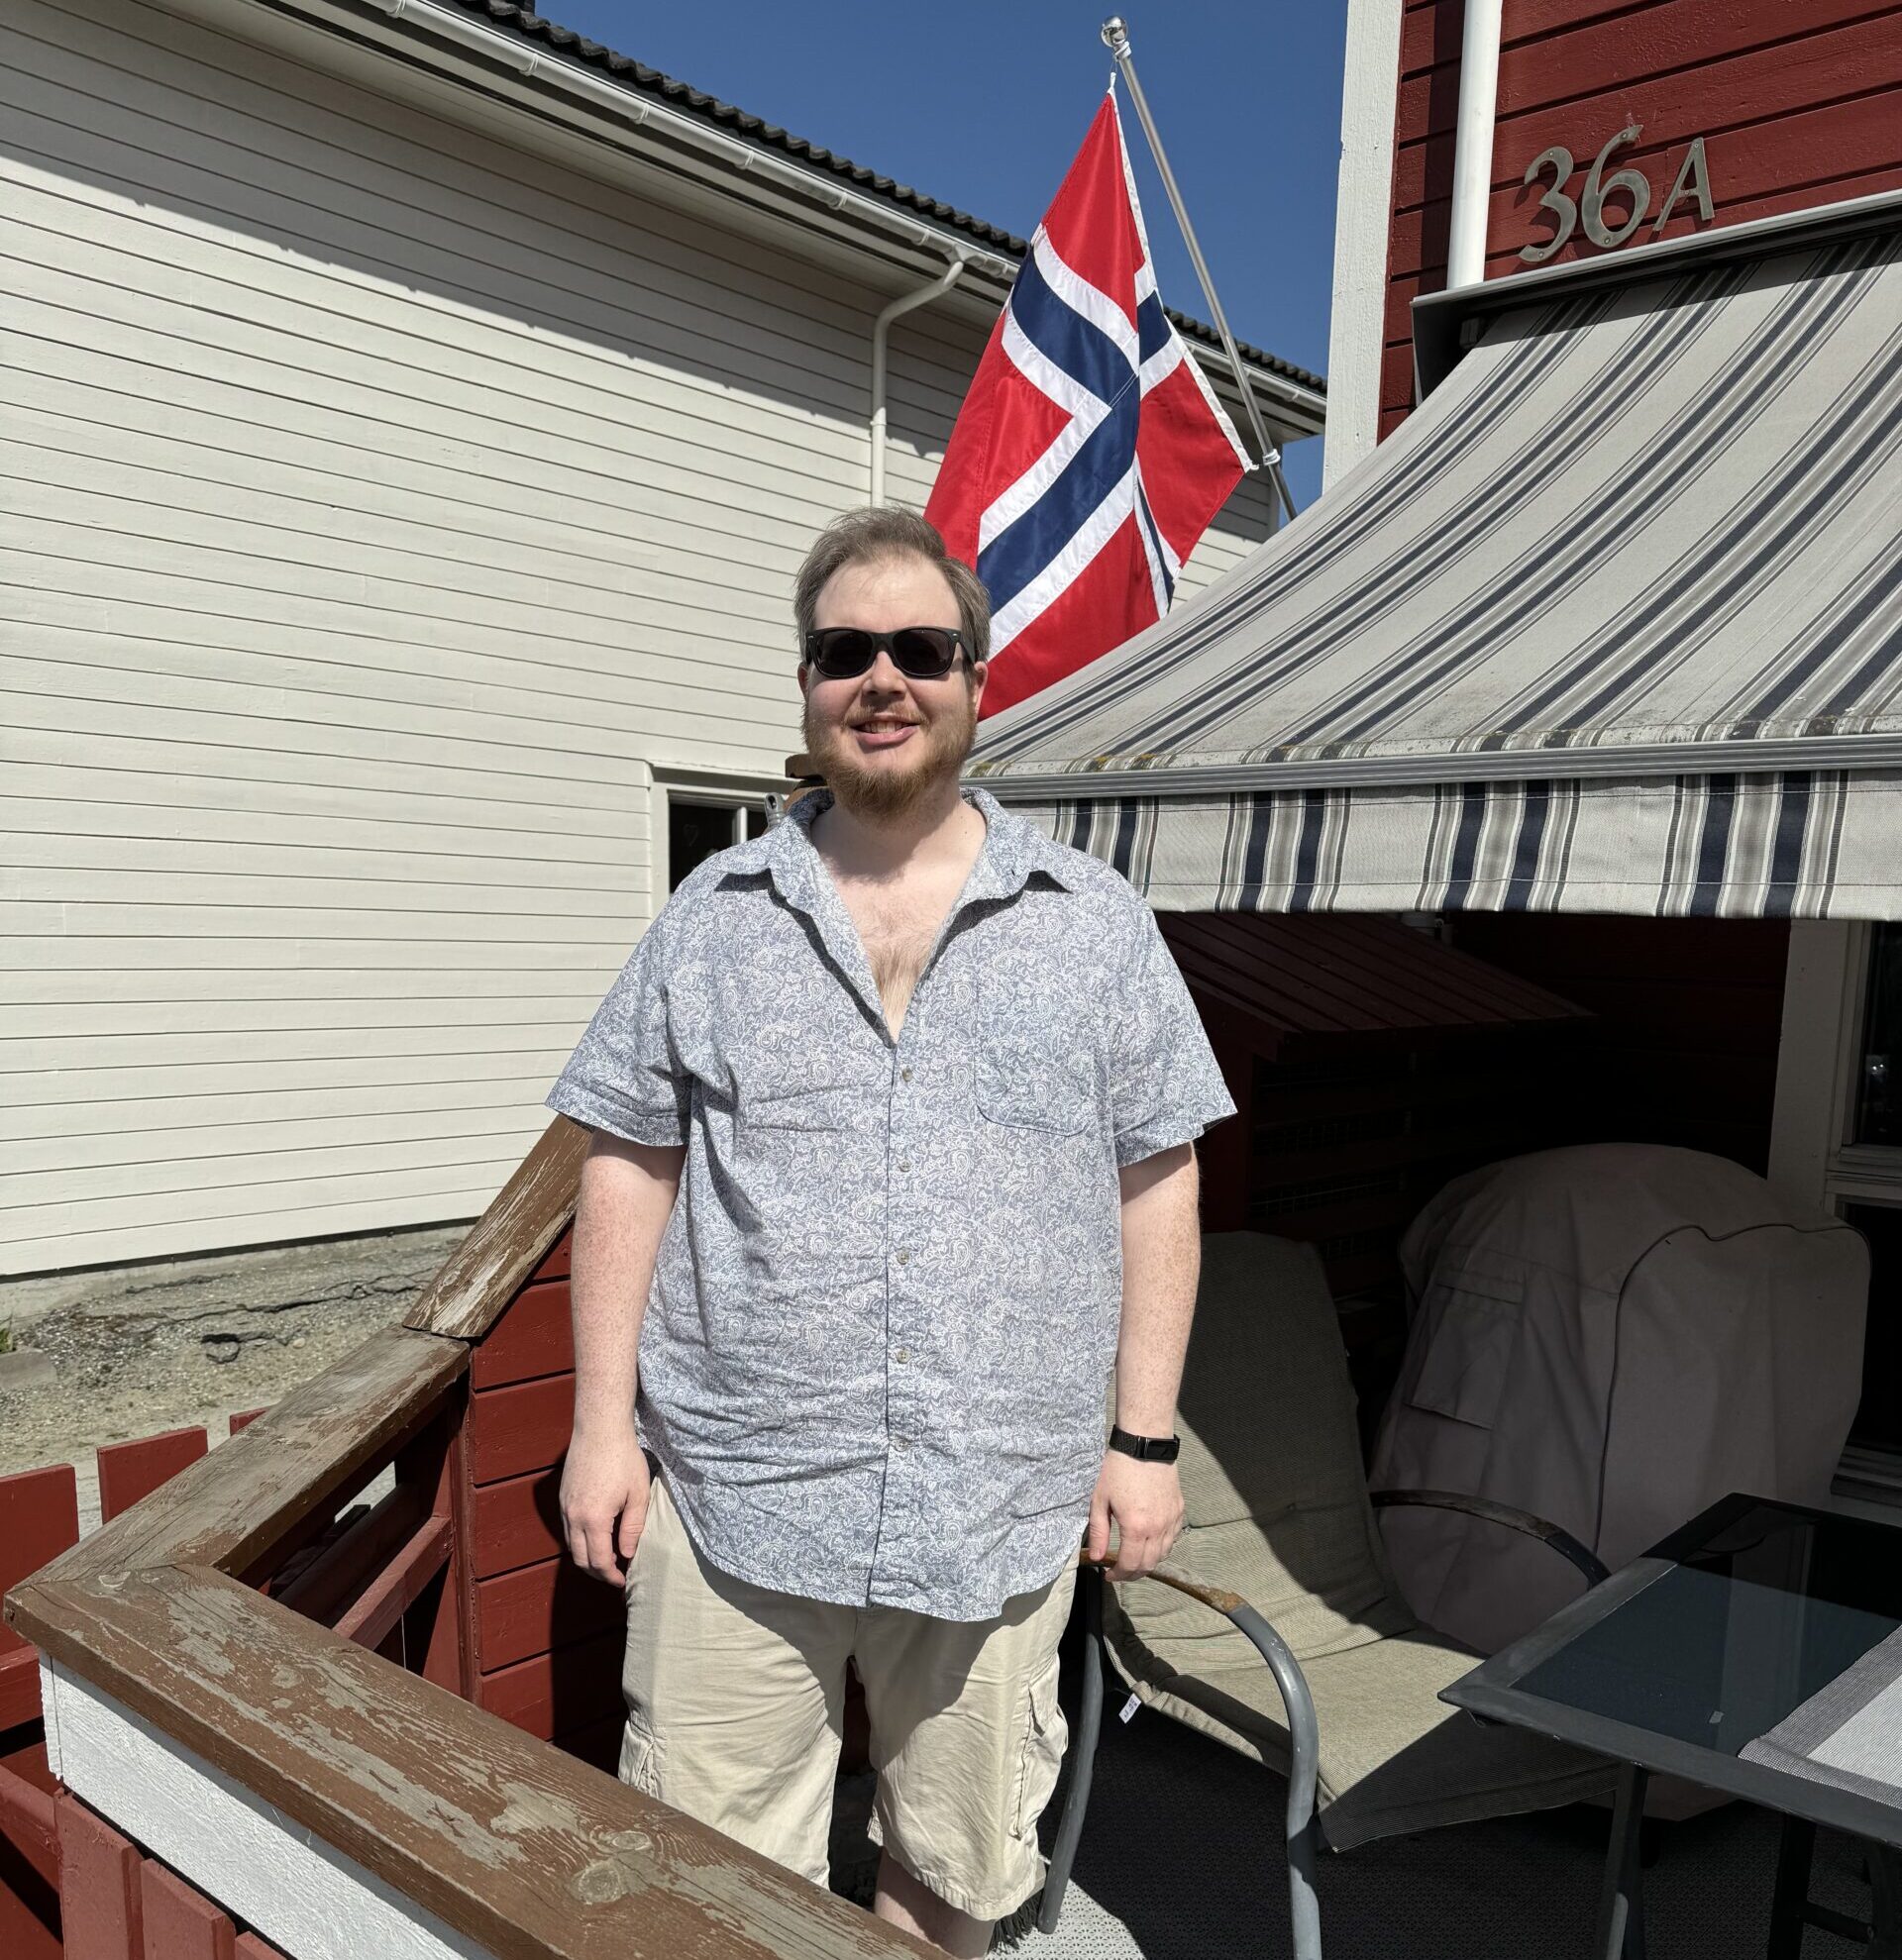 En skjeggete mann med solbriller står og smiler på en terrasse. Han har på seg en beige, knelang shorts og en grå, kortermet skjorte med hvitt mønster. I bakgrunnen, en stol, en markisa, og det norske flagget.